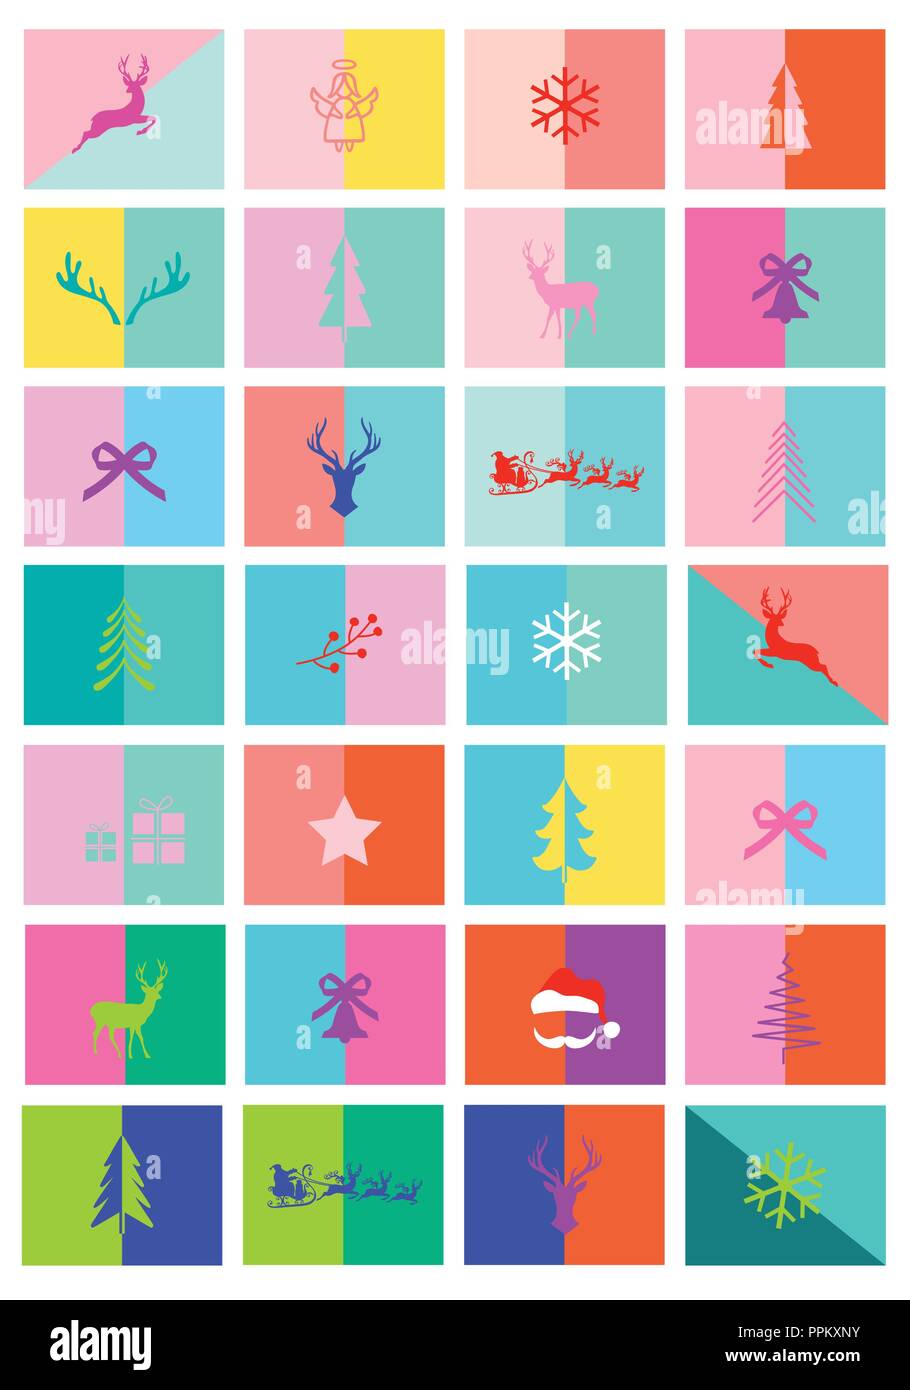 Weihnachtskarten, Adventskalender, 28 moderne und farbenfrohe Layout Vorlagen, von Vektor Grafik Design Elemente einstellen Stock Vektor